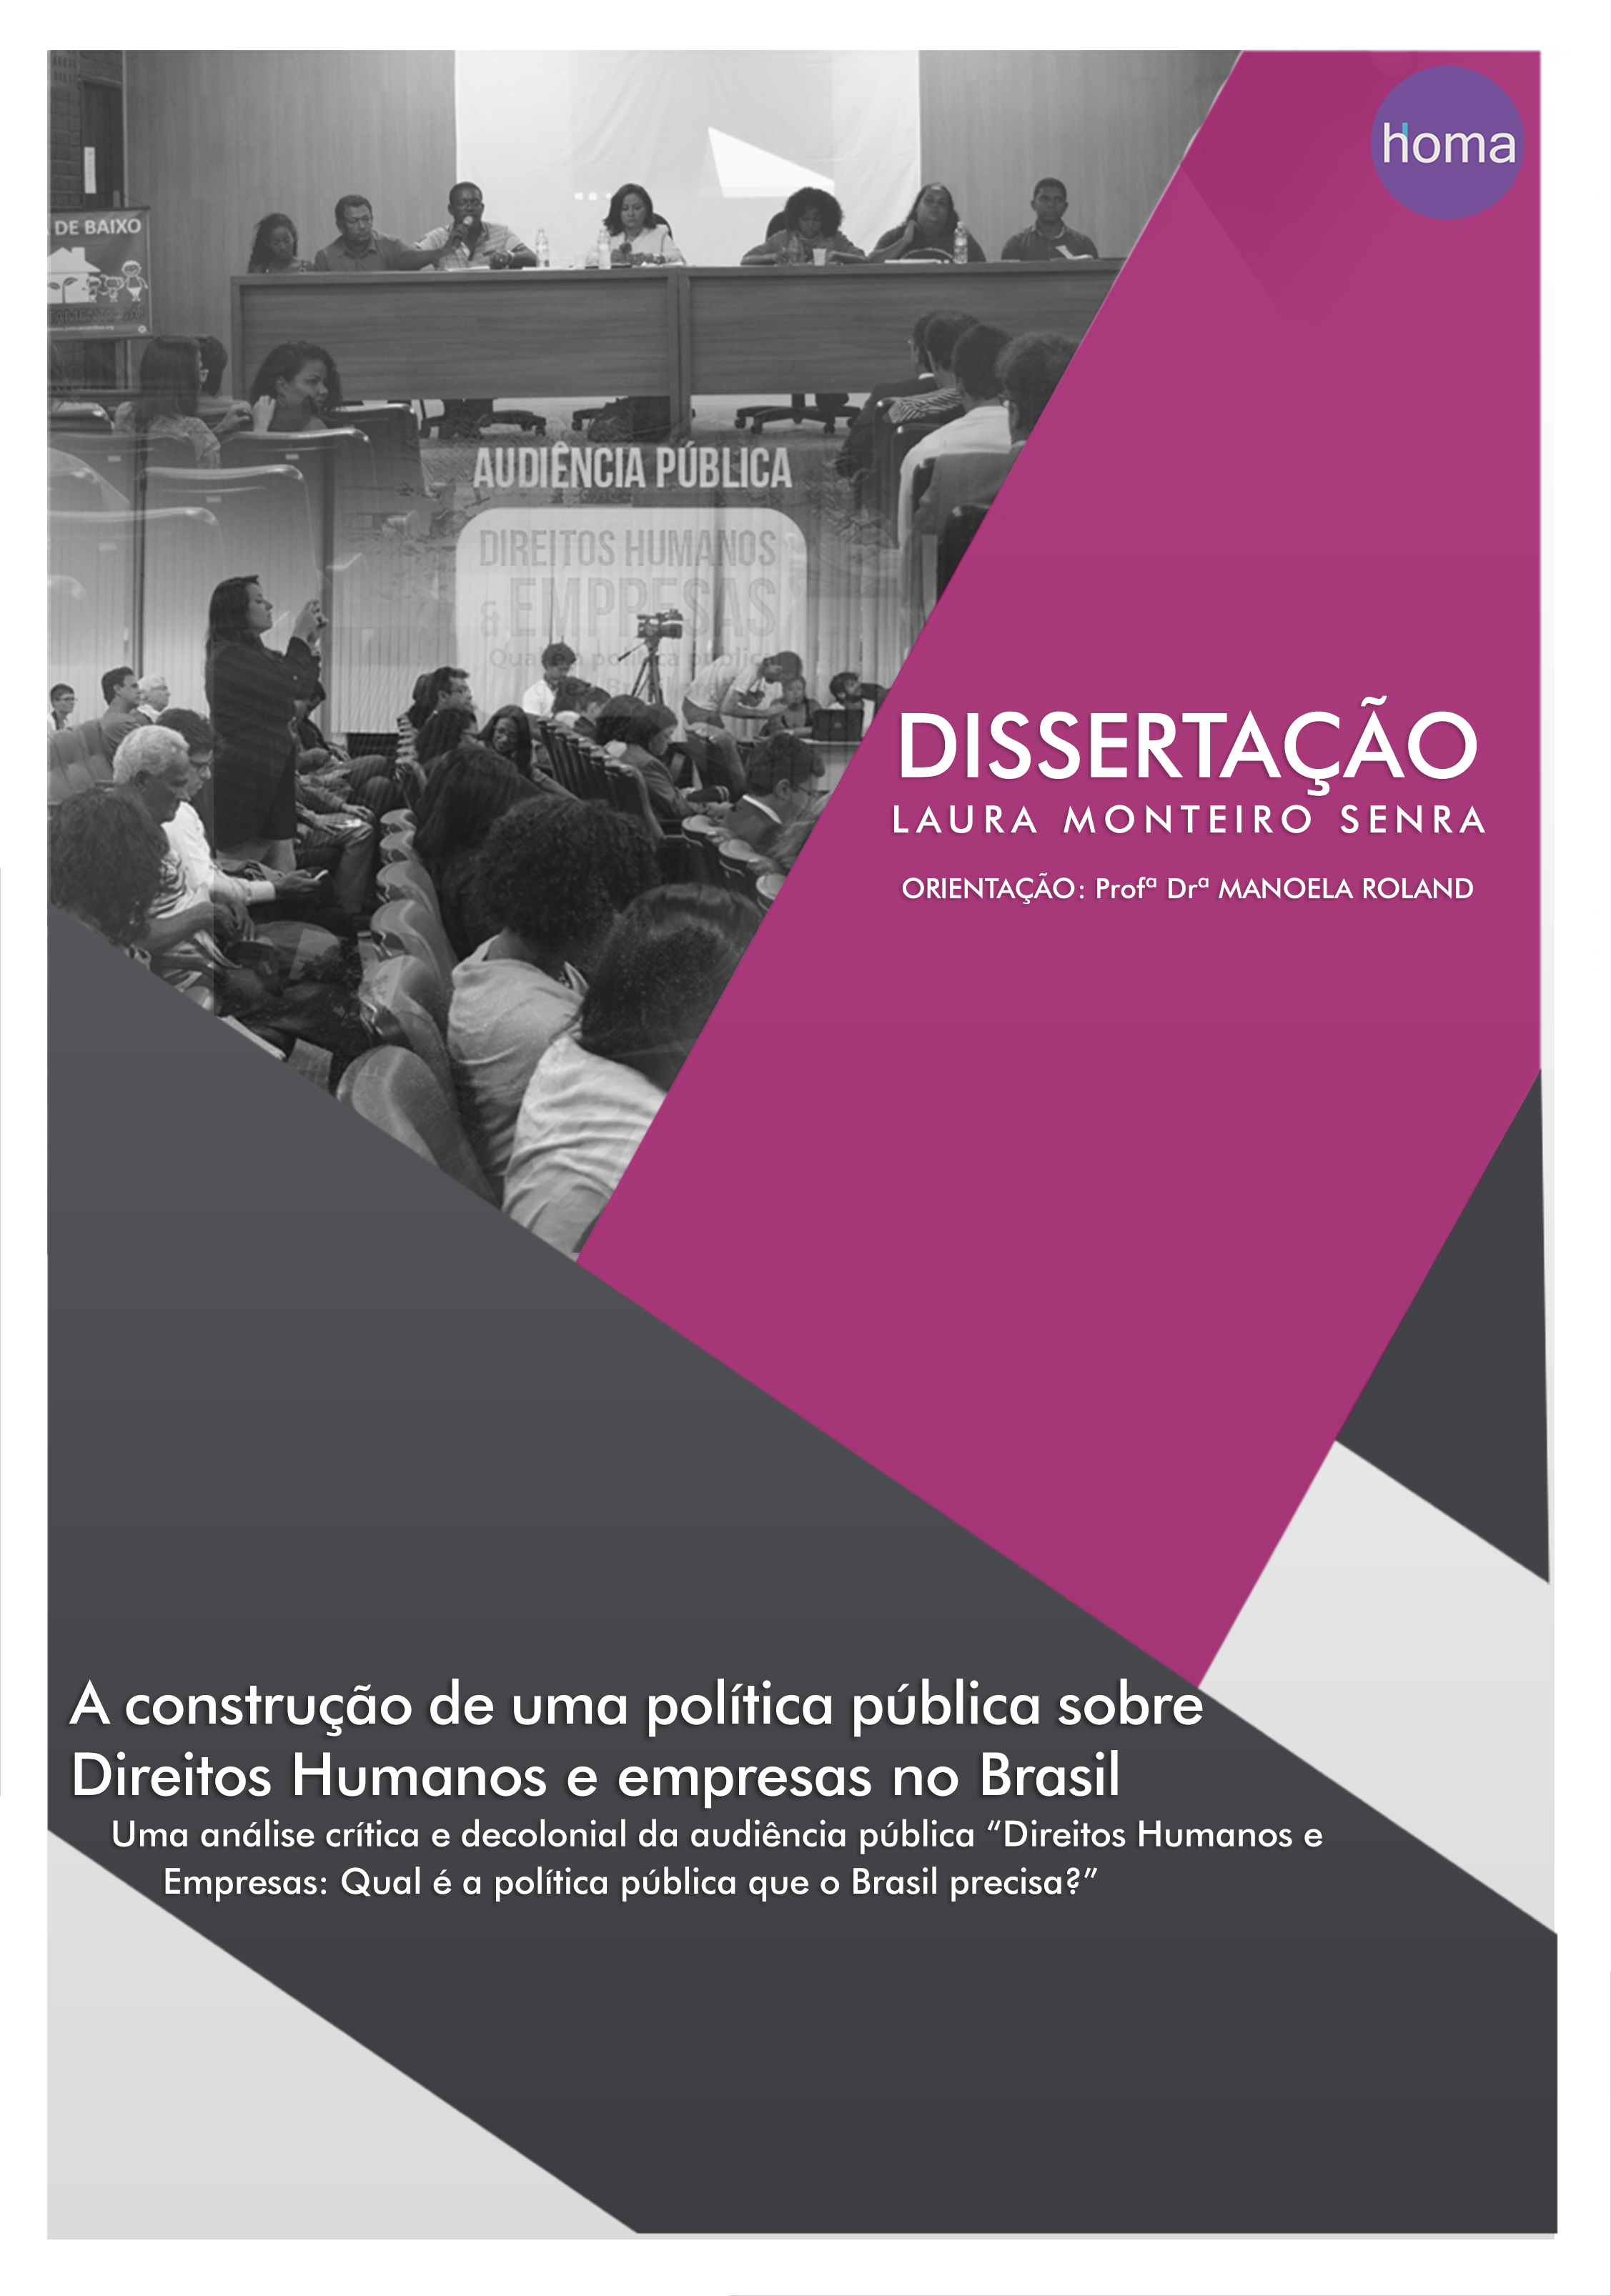 A construção de uma política pública sobre Direitos Humanos e empresas no Brasil: uma análise crítica e decolonial da audiência pública “Direitos Humanos e empresas: qual a política pública que o Brasil precisa? ”